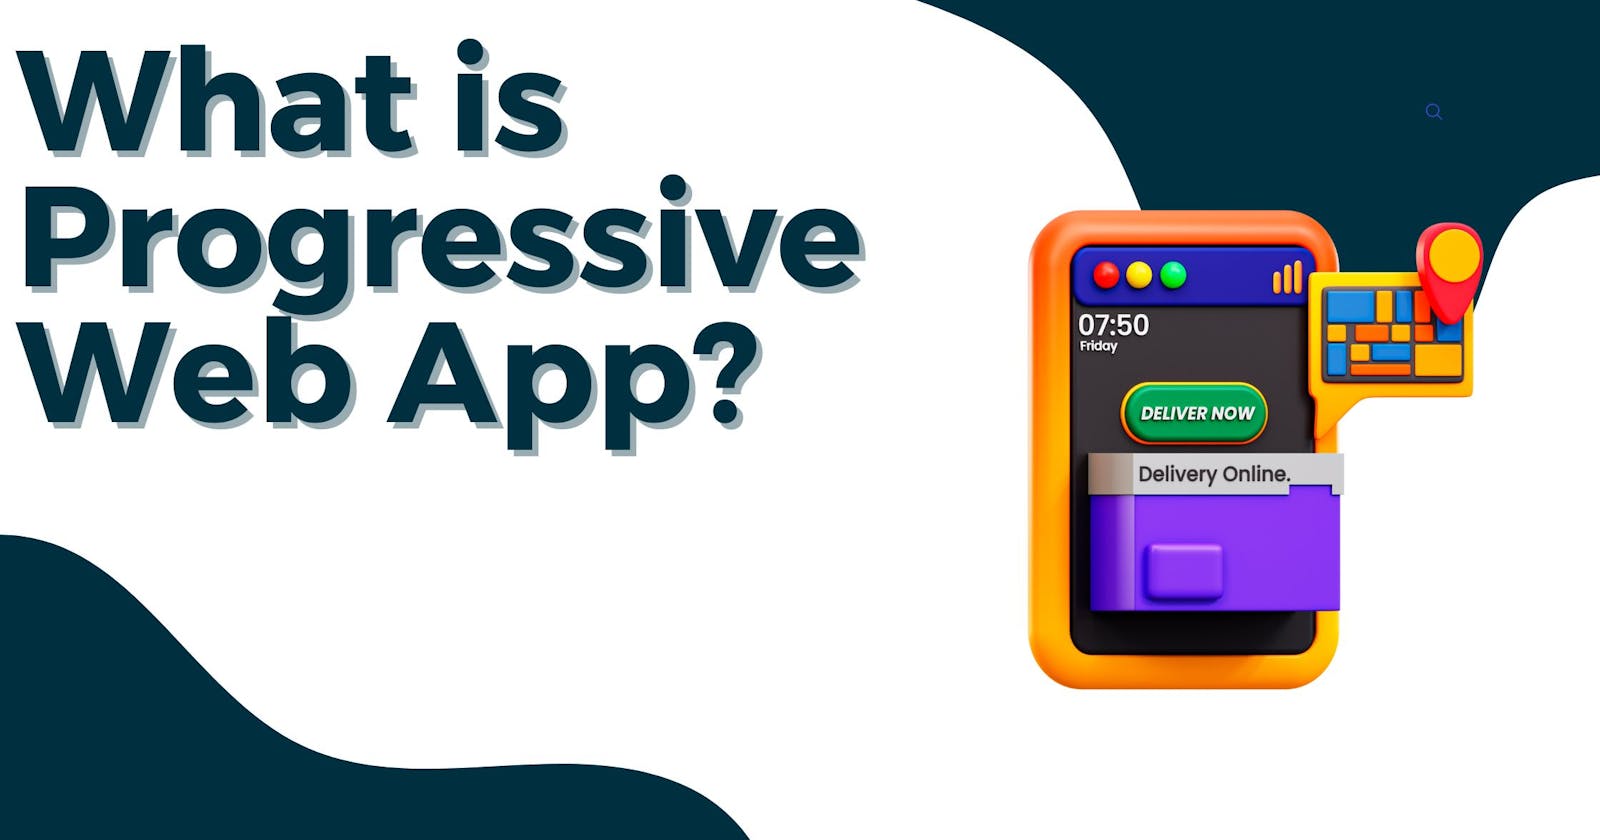 Let's talk about Progressive Web Apps 📱